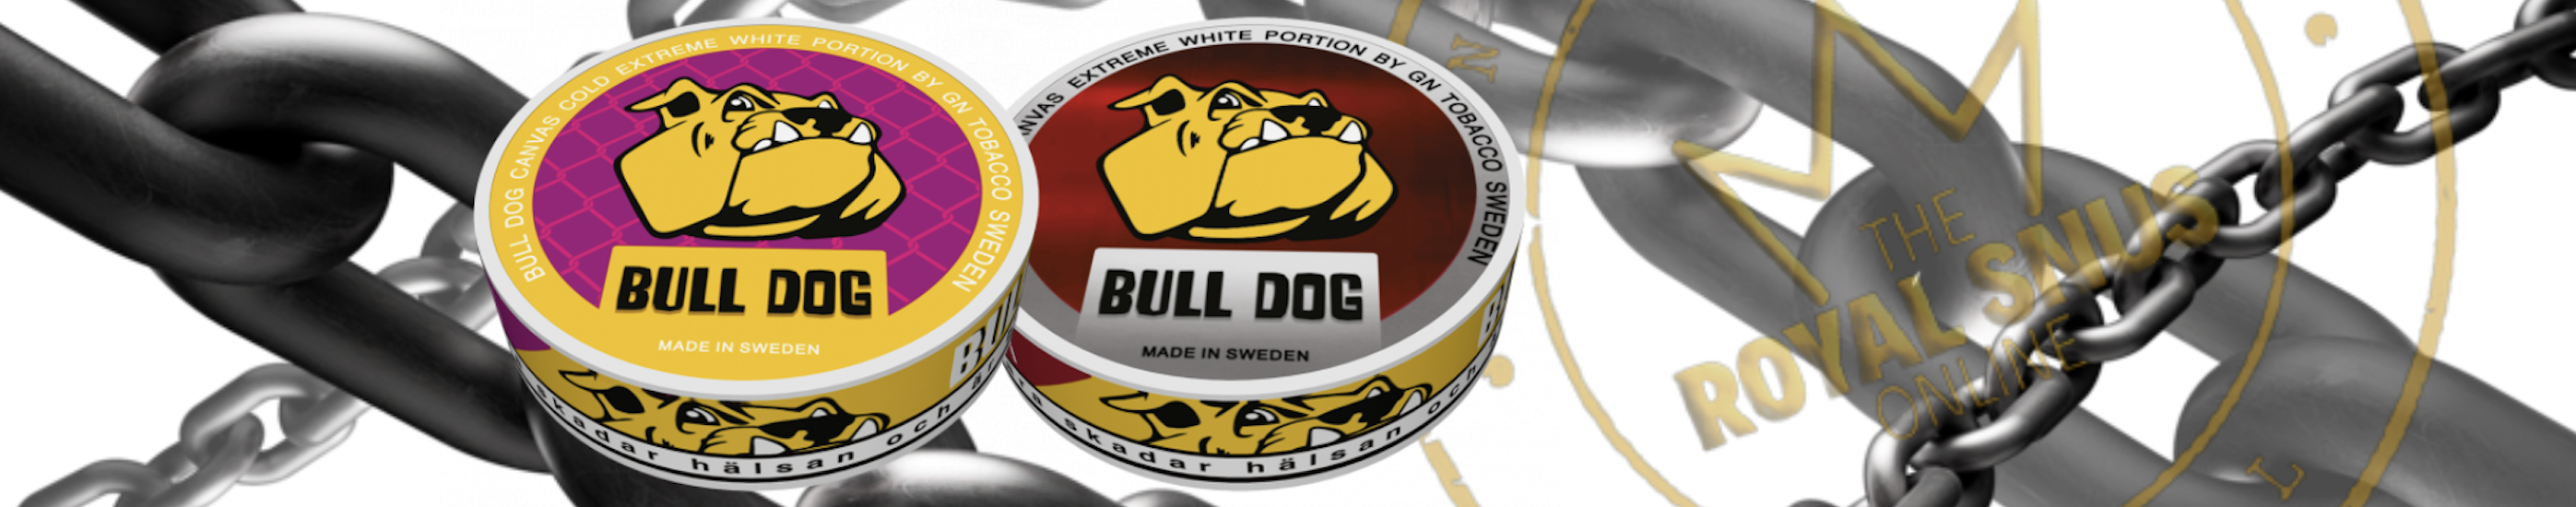 Buy Bull Dog Snus